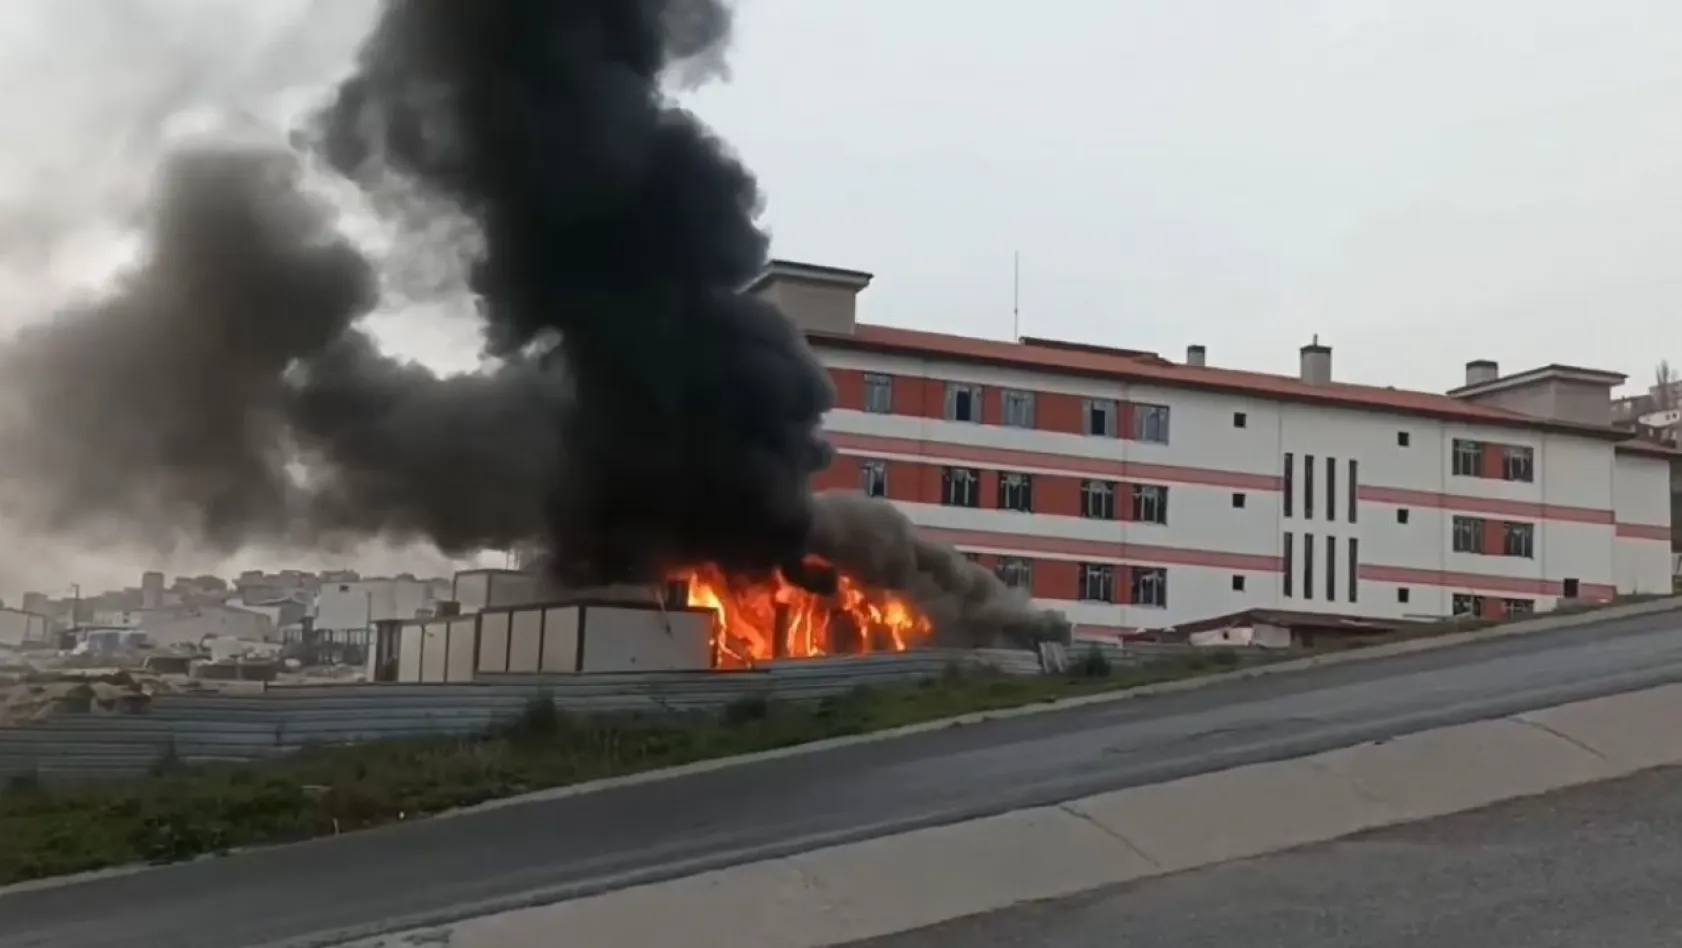 Başakşehir'de okul inşaatı bahçesindeki işçi konteynırı alev alev yandı